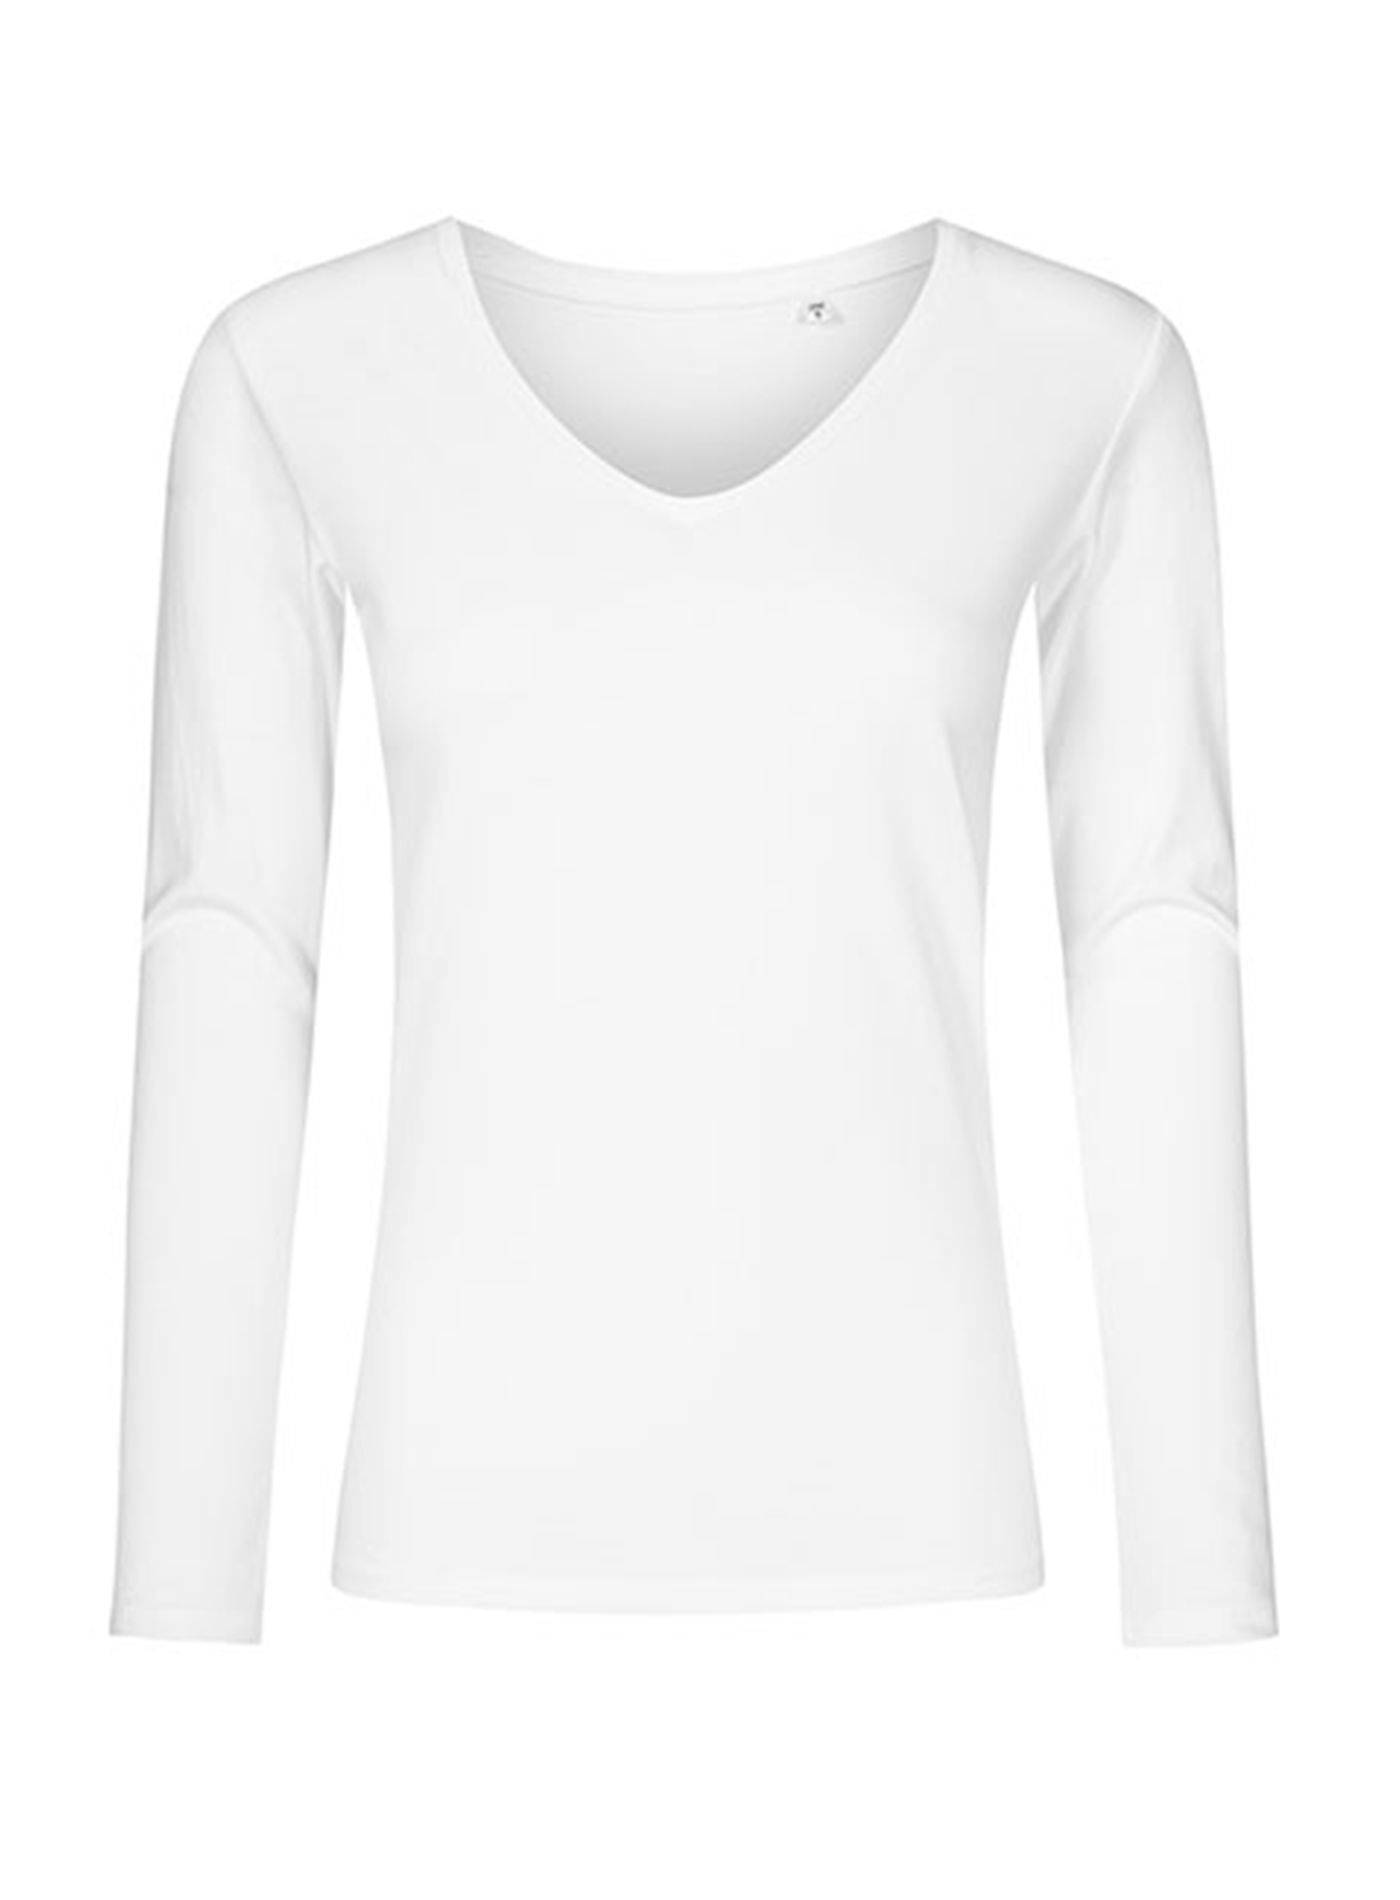 Dámské tričko s dlouhým rukávem a výstřihem do V Promodoro - Bílá L